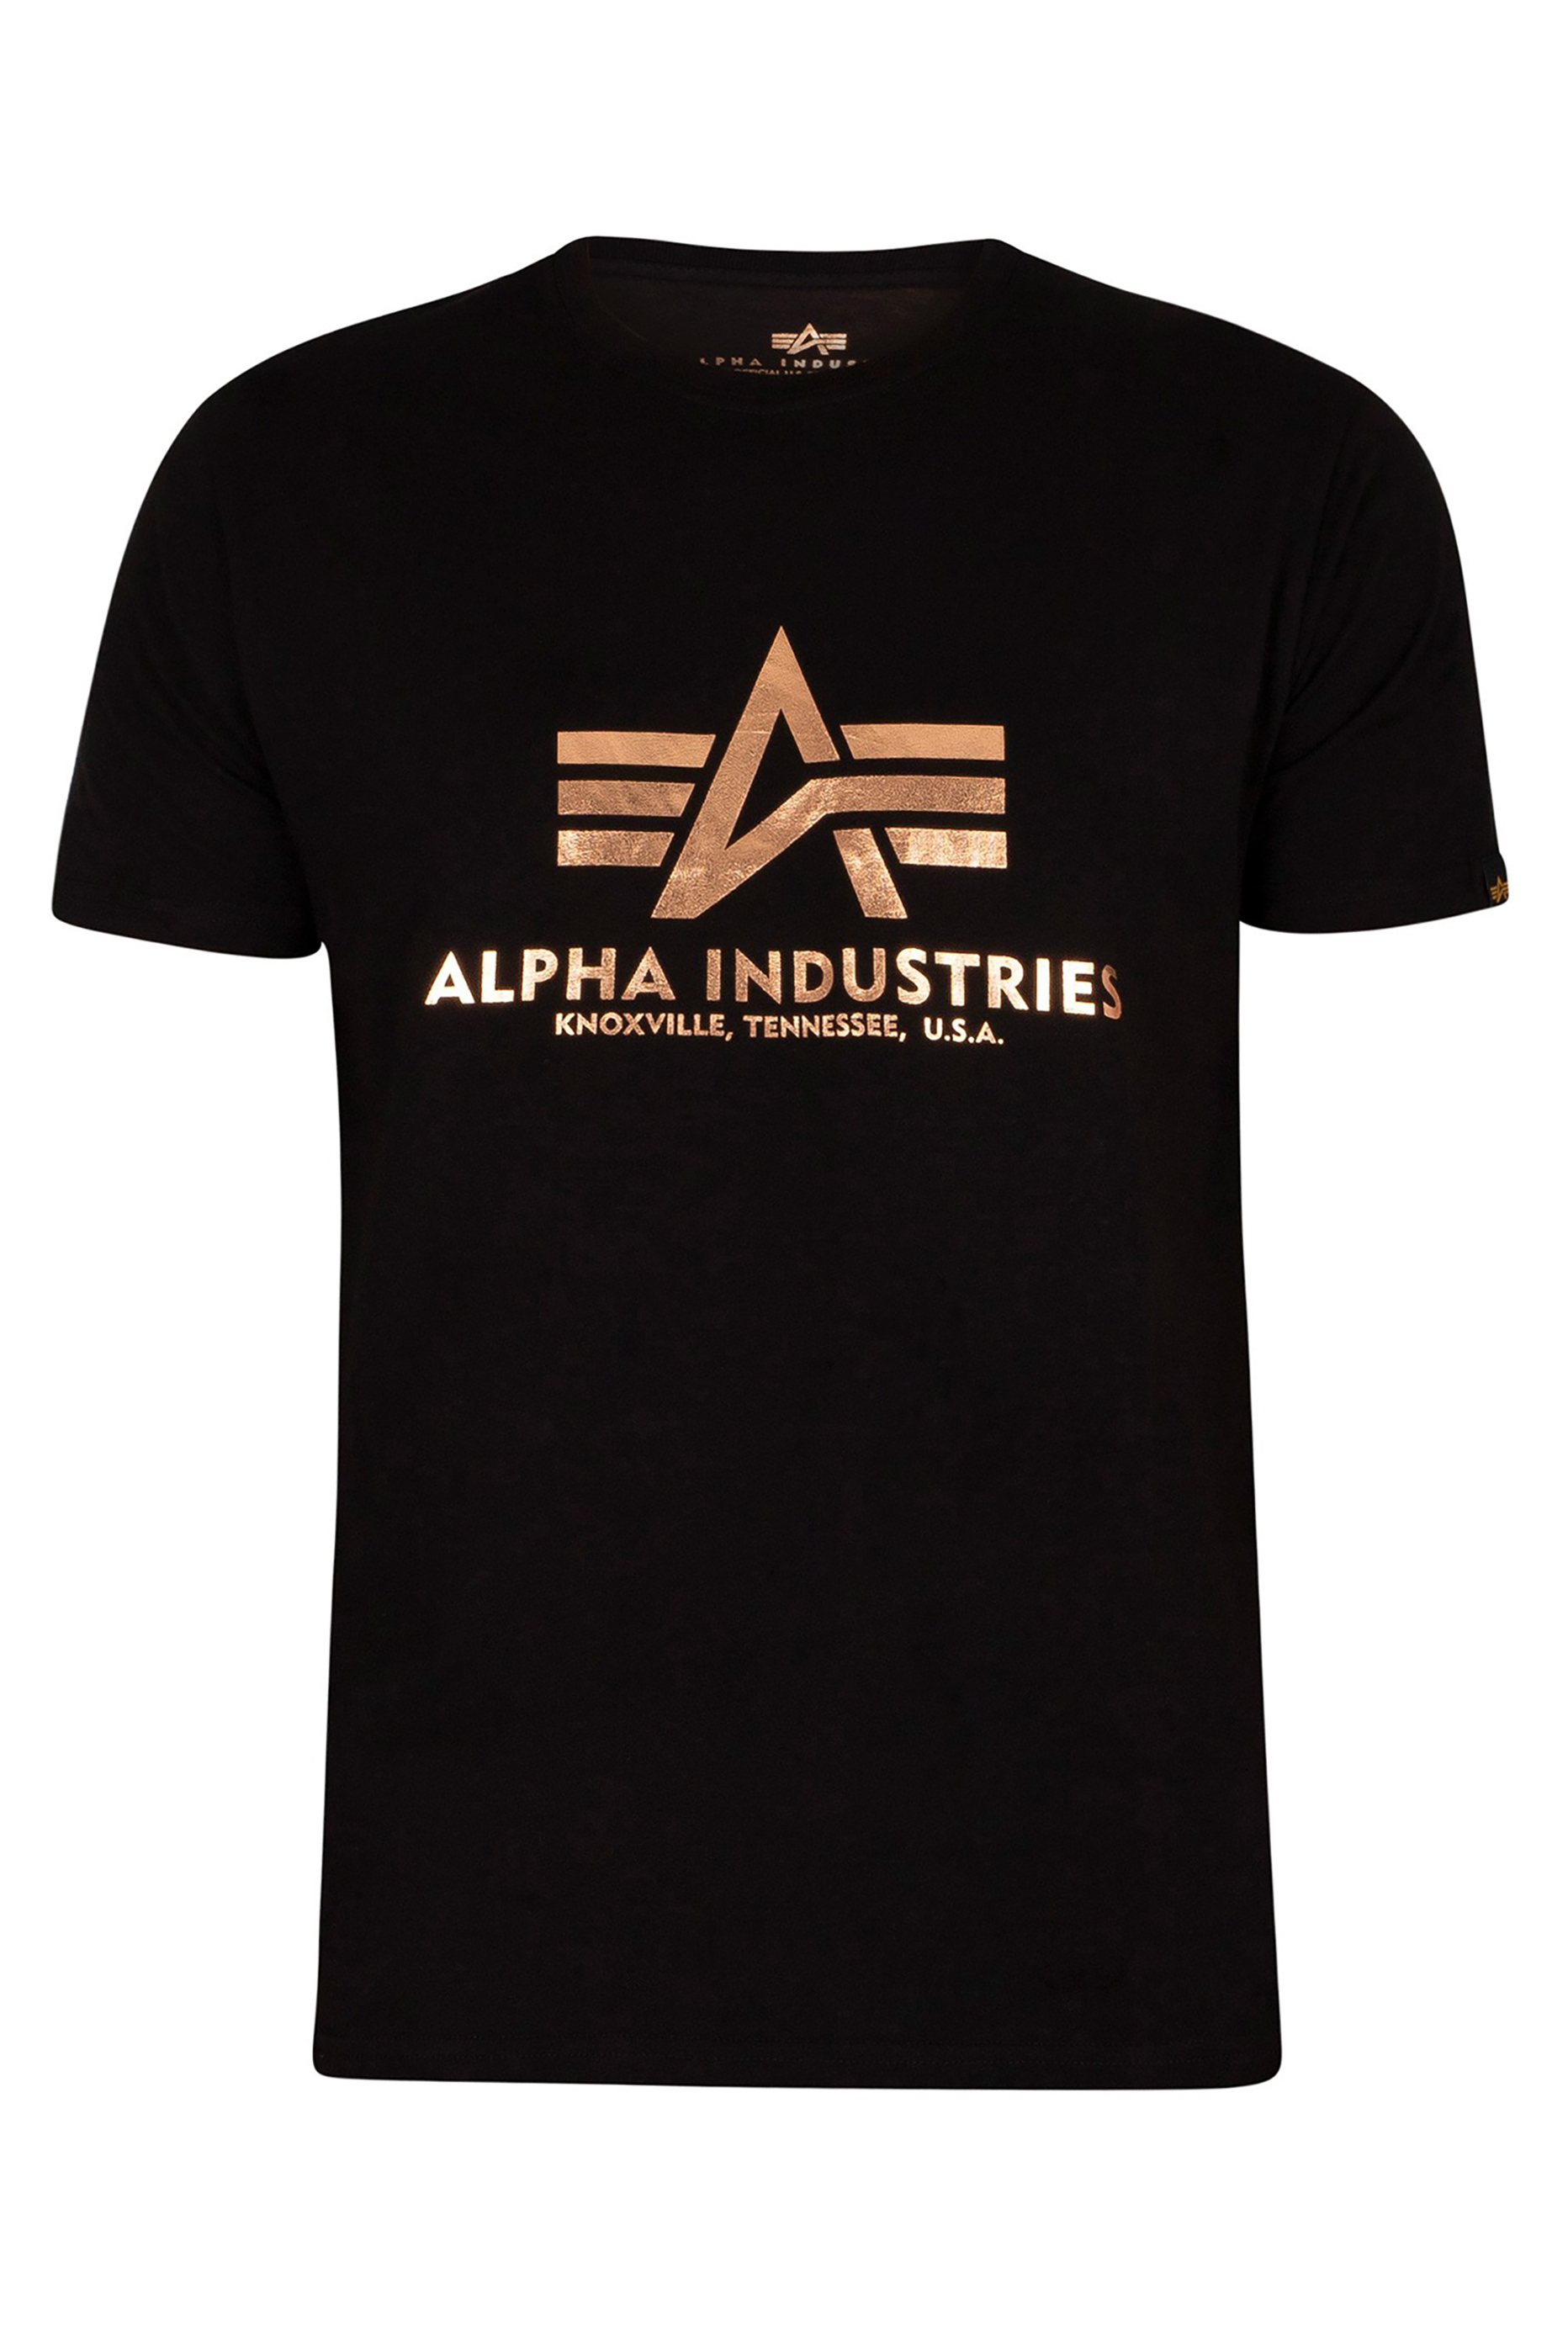 ALPHA INDUSTRIES Black Foil T-Shirt_F.jpg